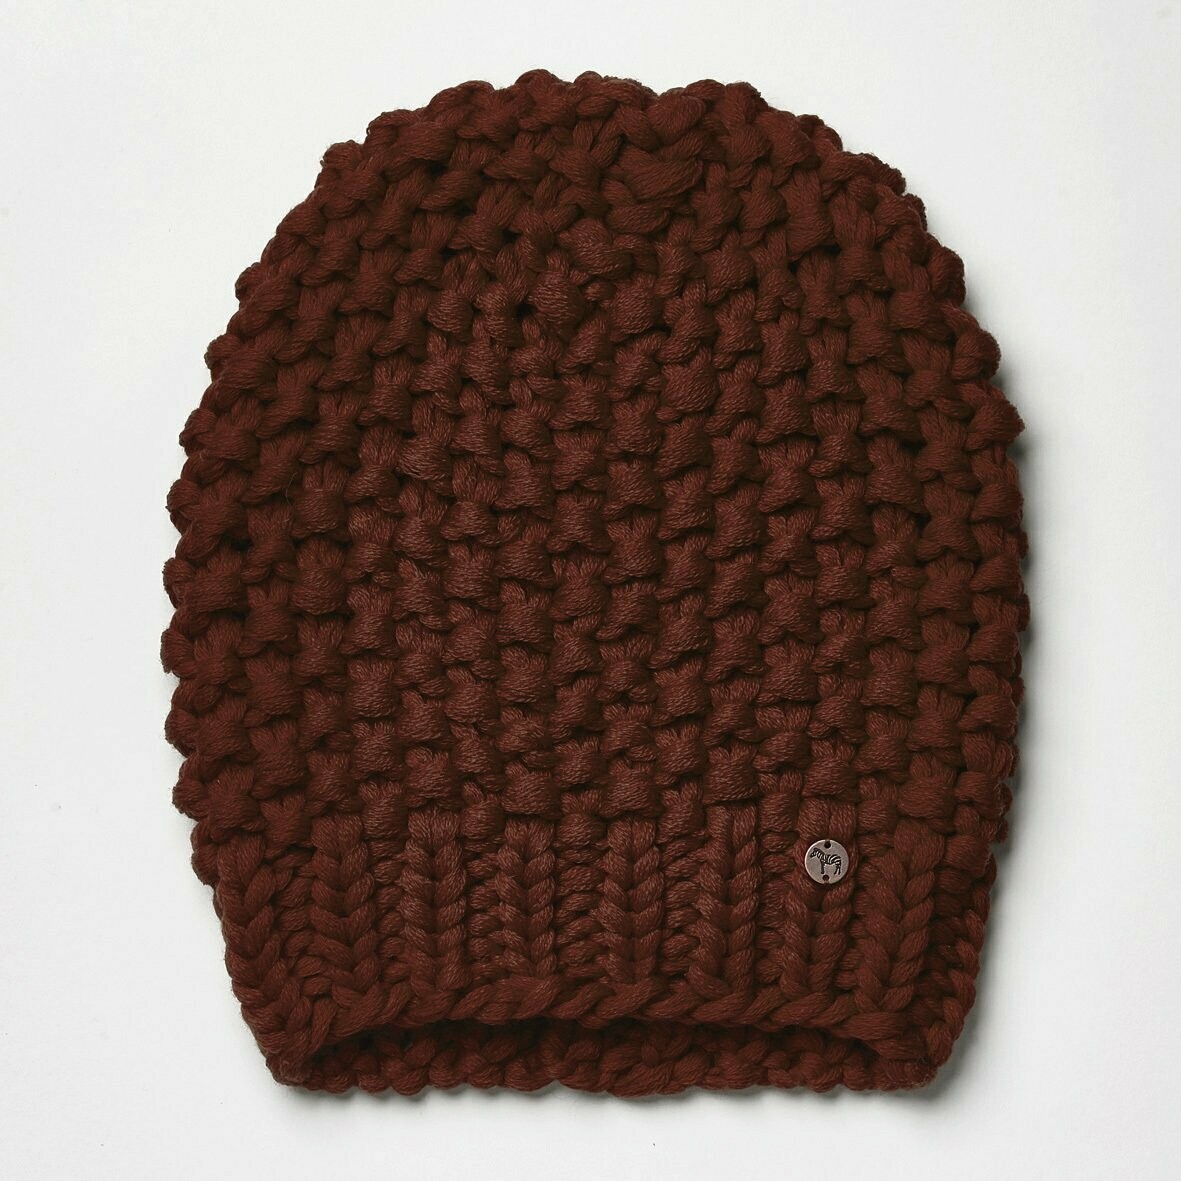 Handstrick-Mütze KARLA, Farbe: rostbraun, Größe: M/L